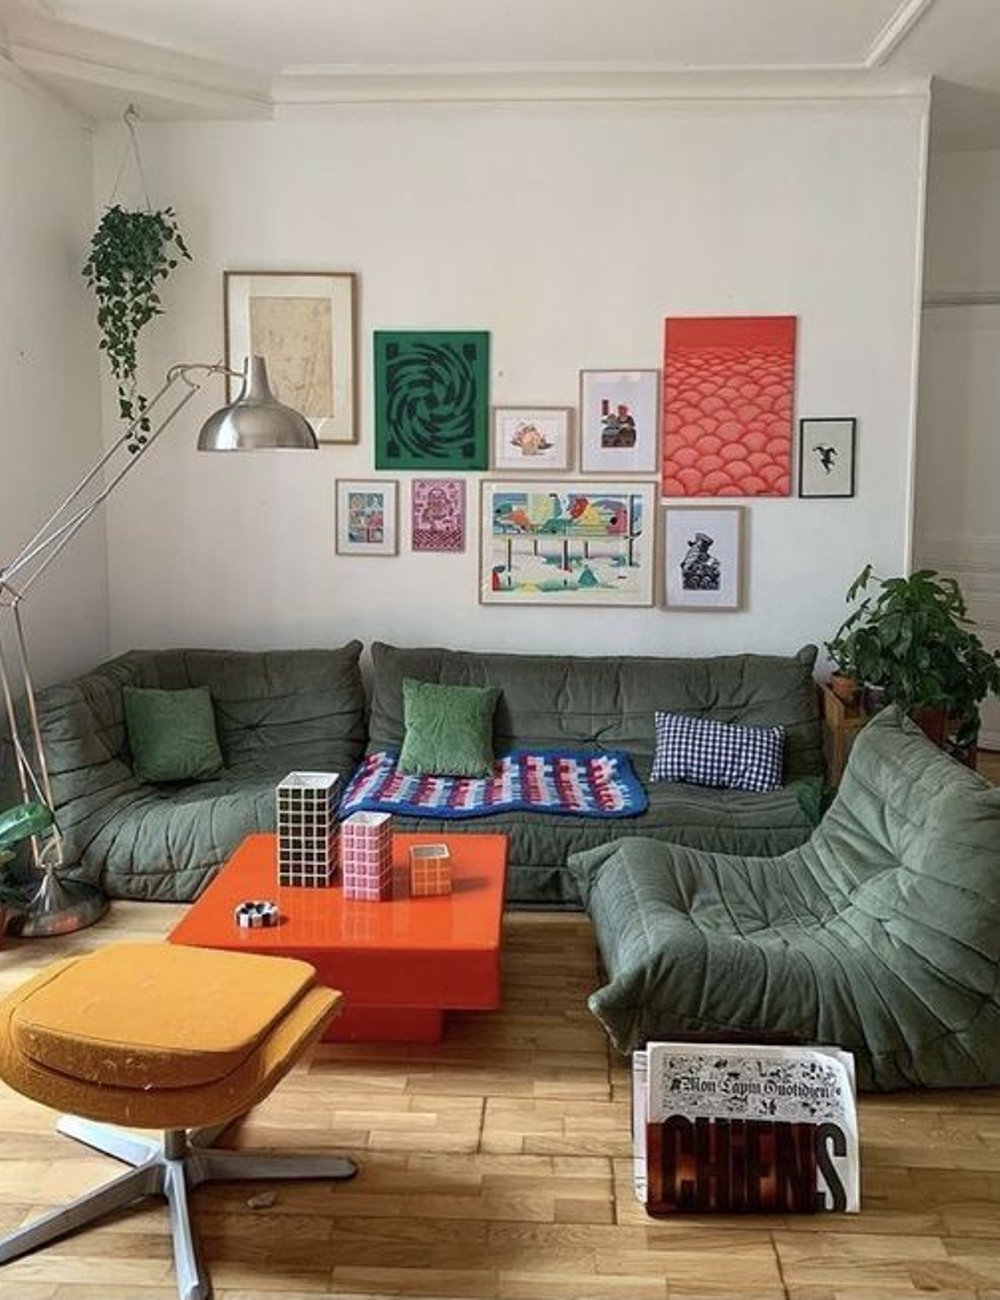 Sofá - decor - sofá togo - decoração - tendência - https://stealthelook.com.br